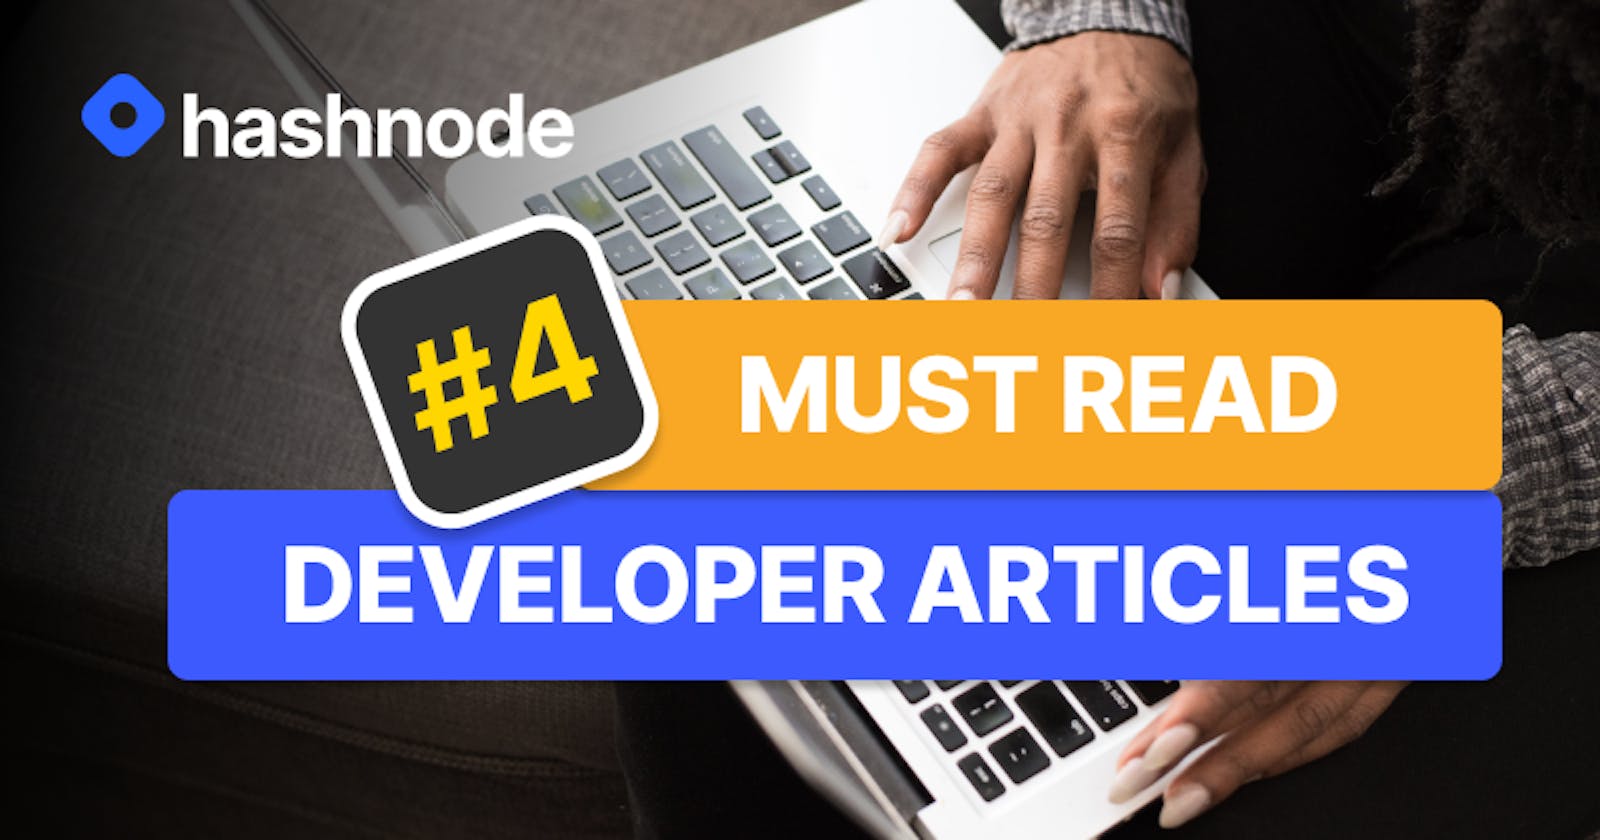 Must Read Developer Articles on Hashnode - #4